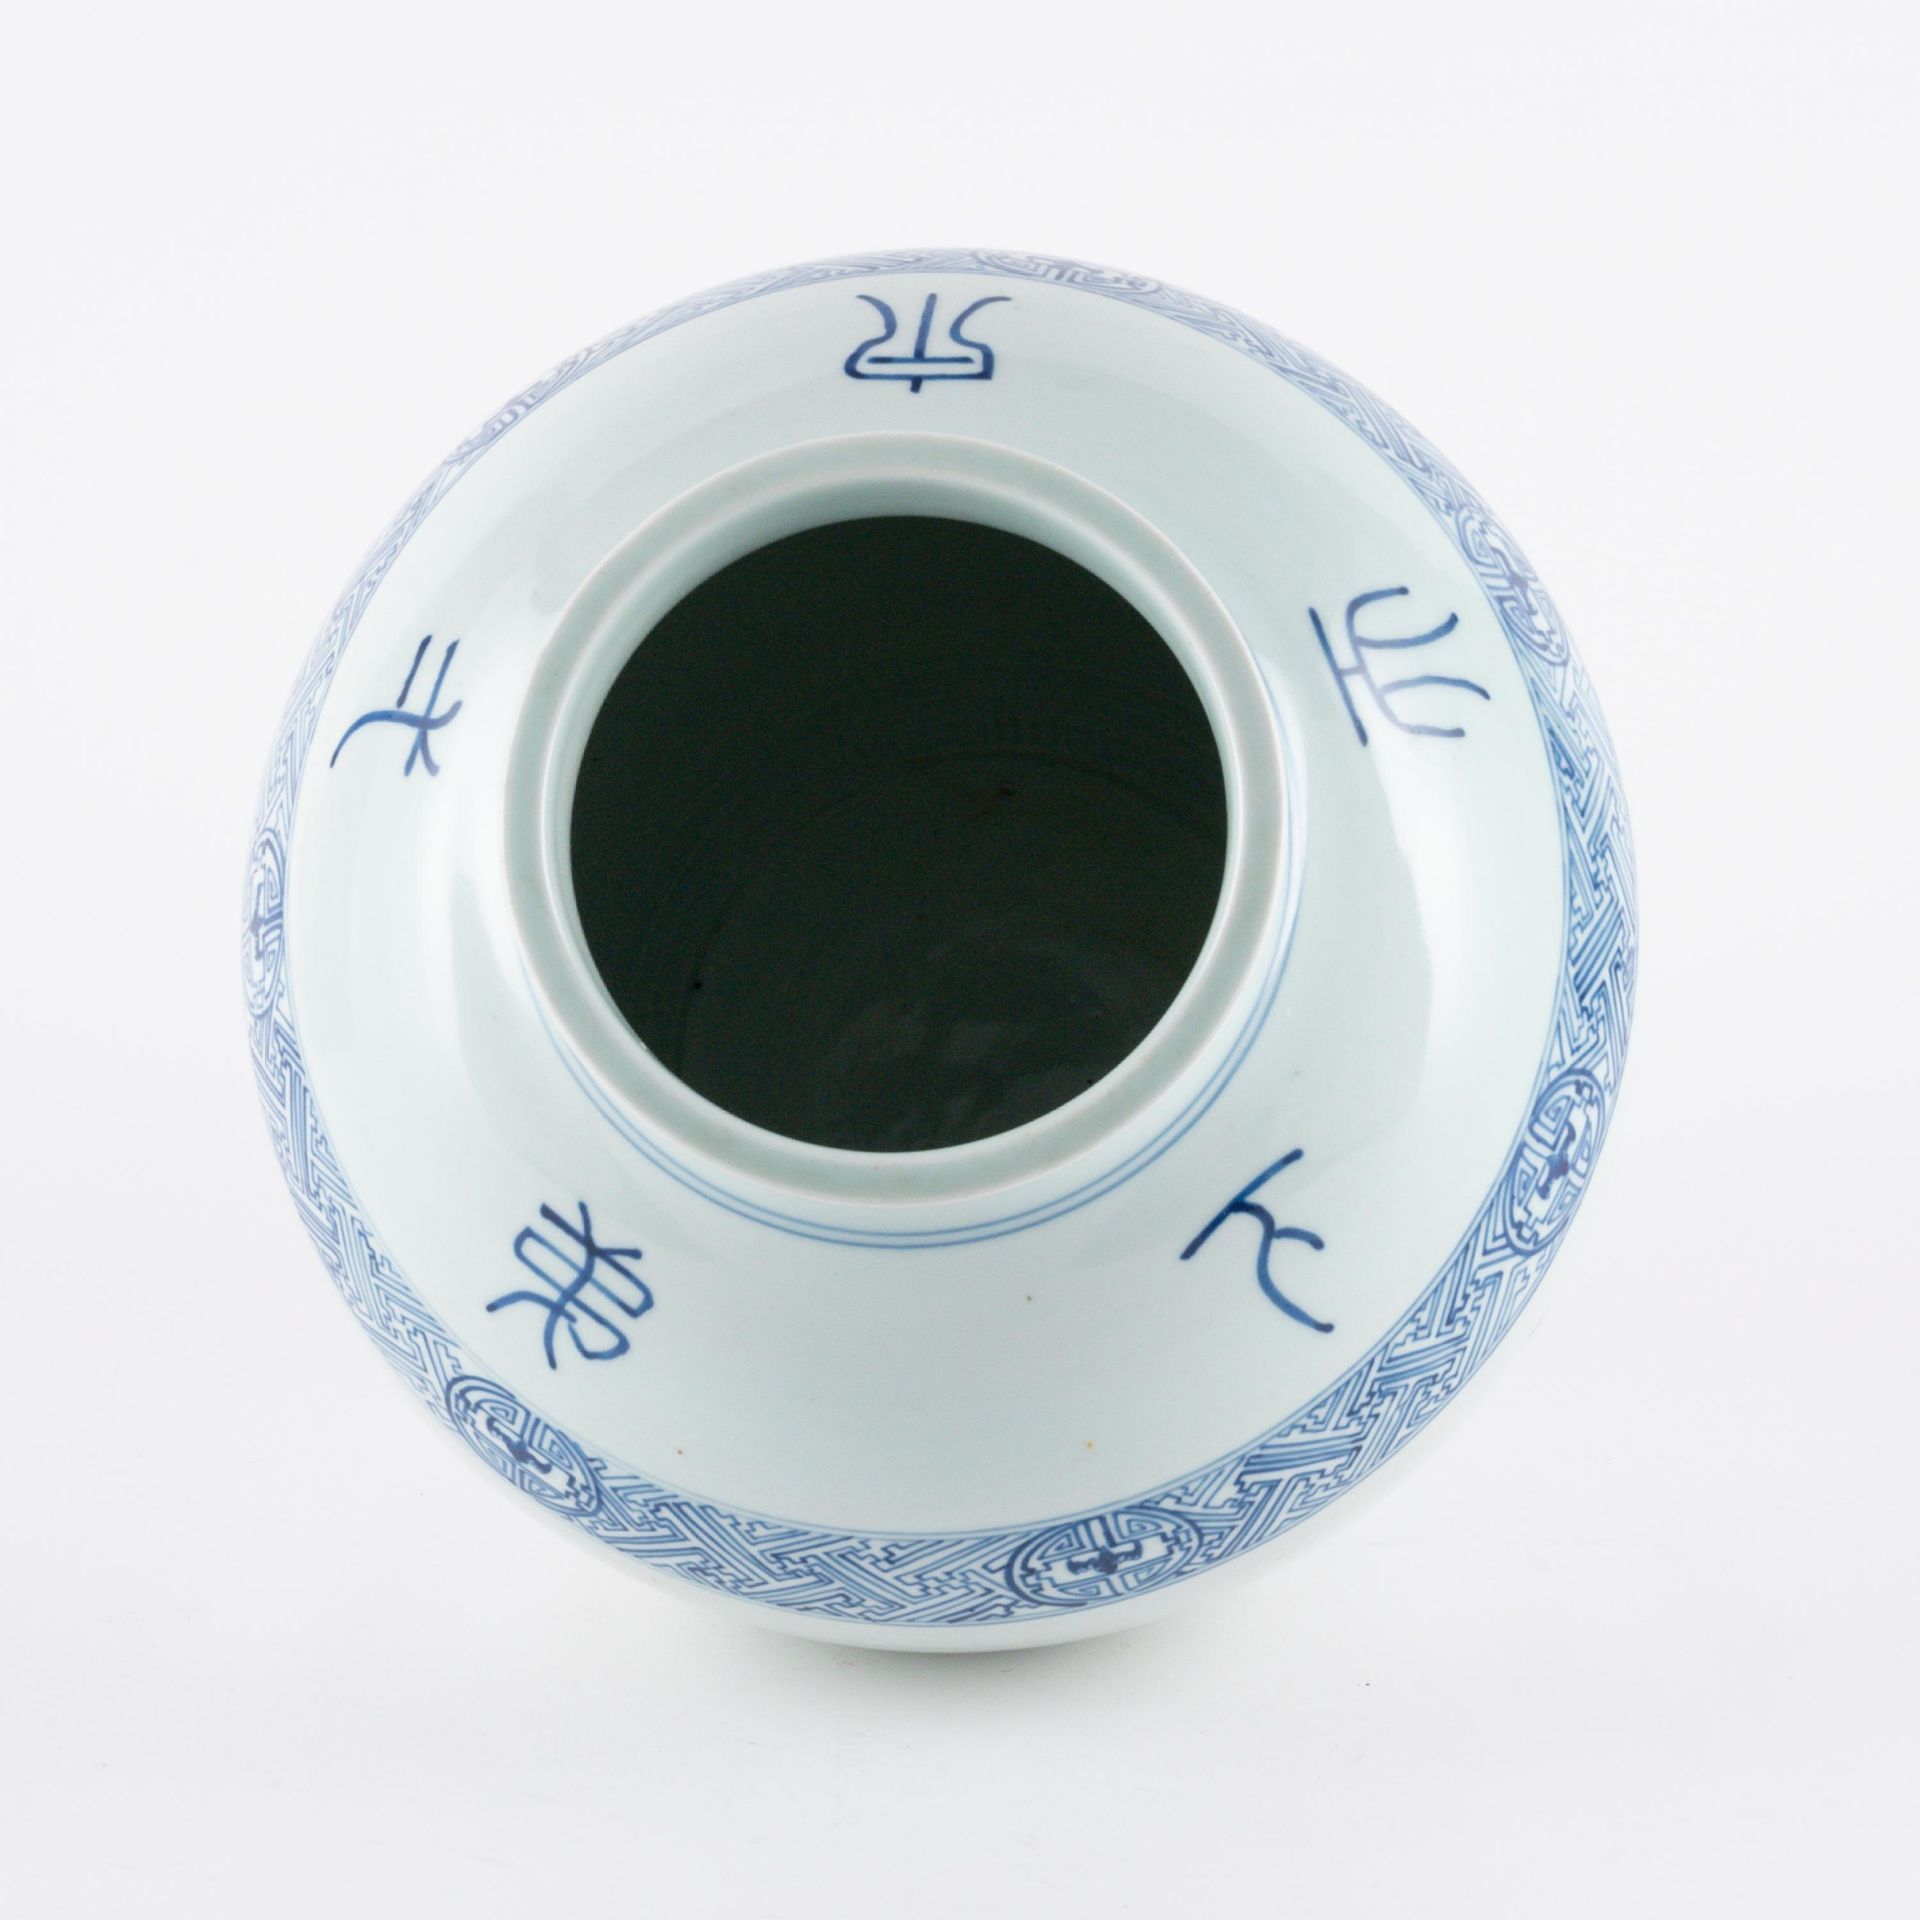 Gebauchte Vase mit chinesischen Schriftzeichen - Image 5 of 6